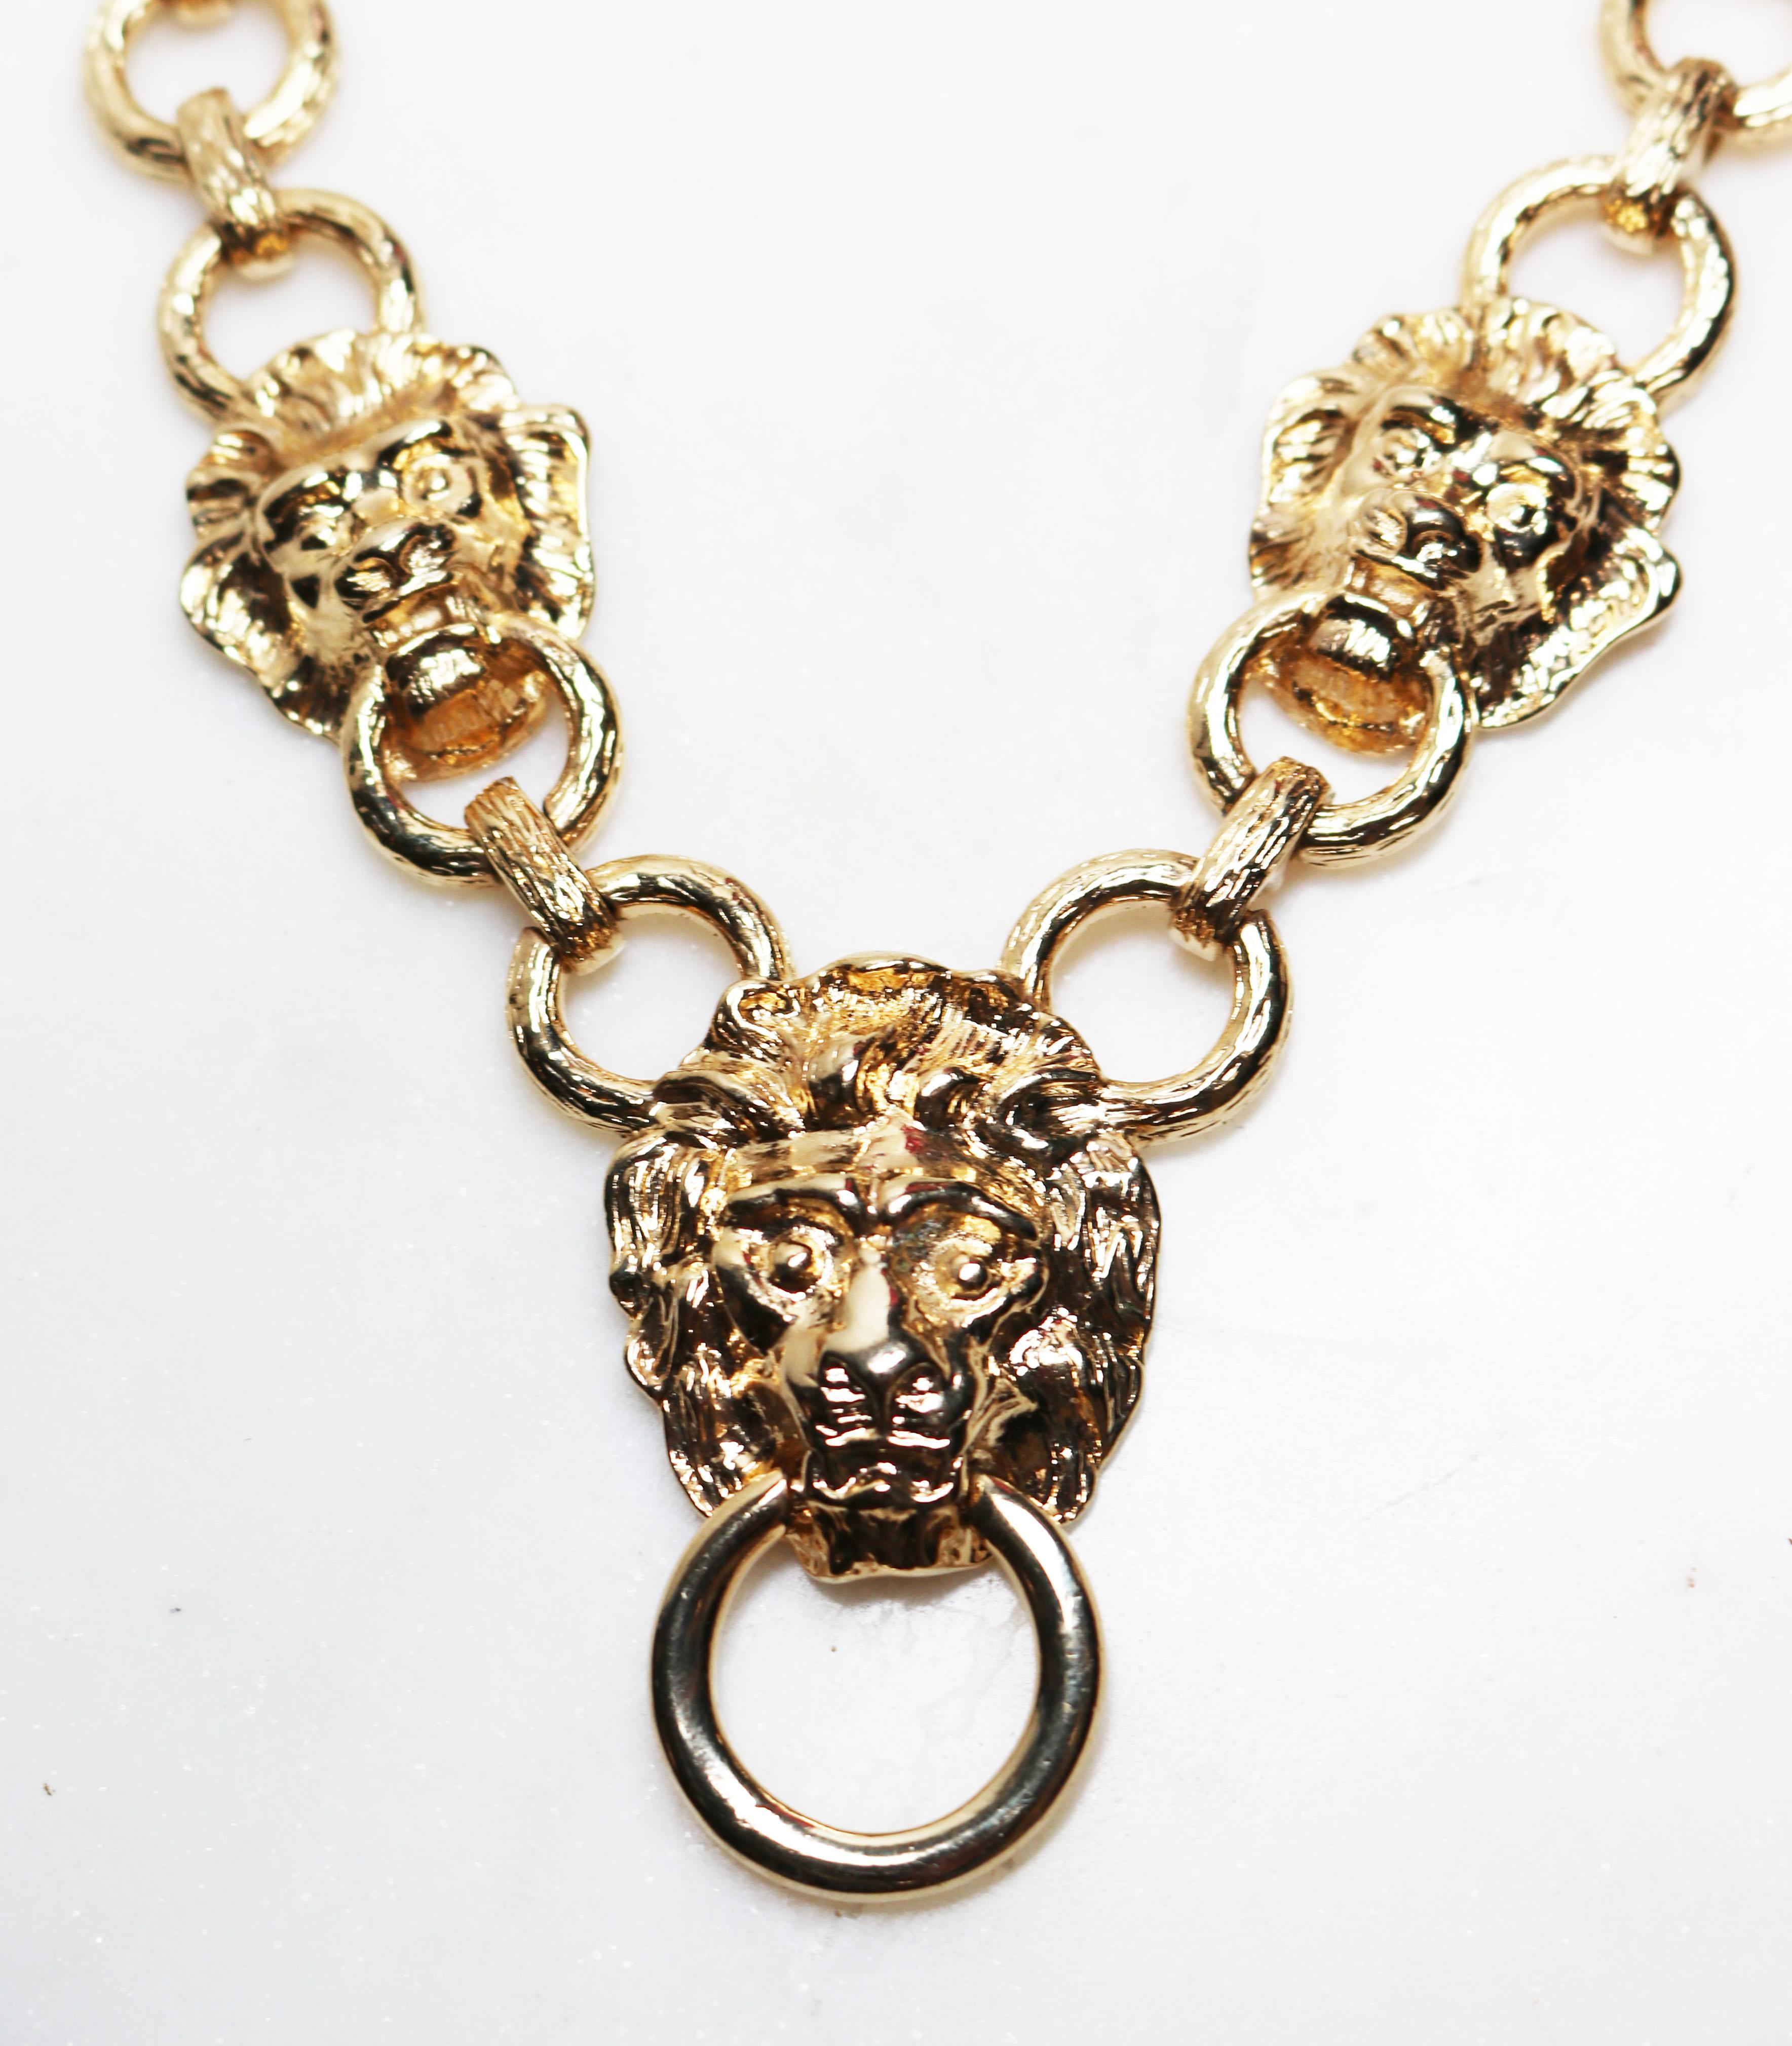 Kenneth Jay Lane Lion's Head Doorknocker Necklace For Sale 3